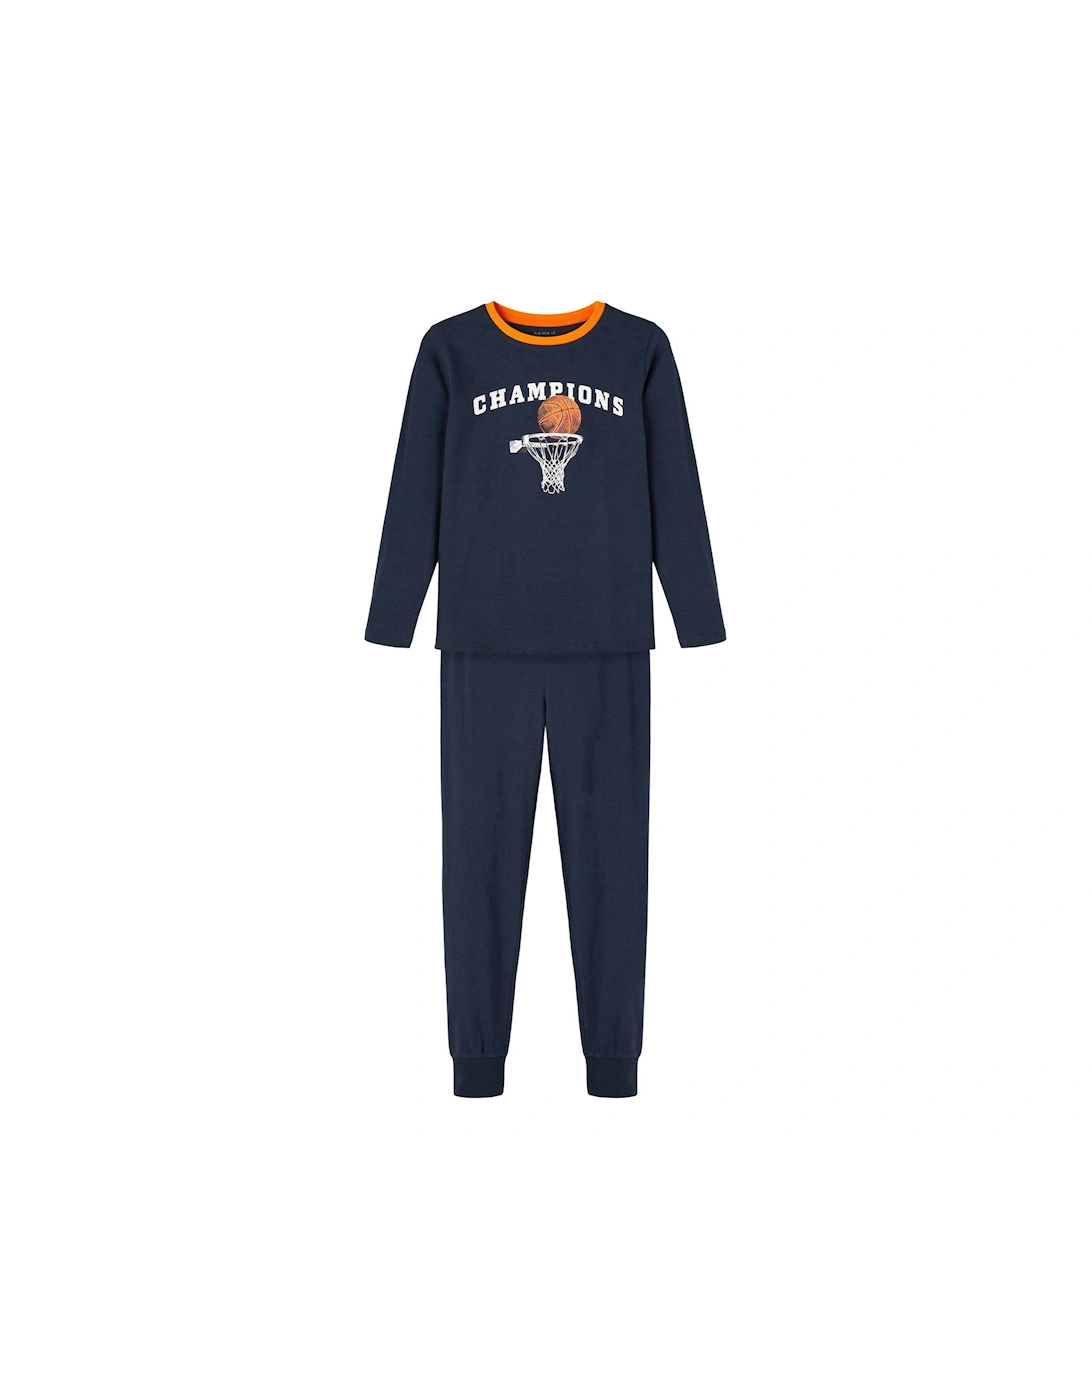 Boys Basketball Pyjamas - Dark Sapphire, 3 of 2